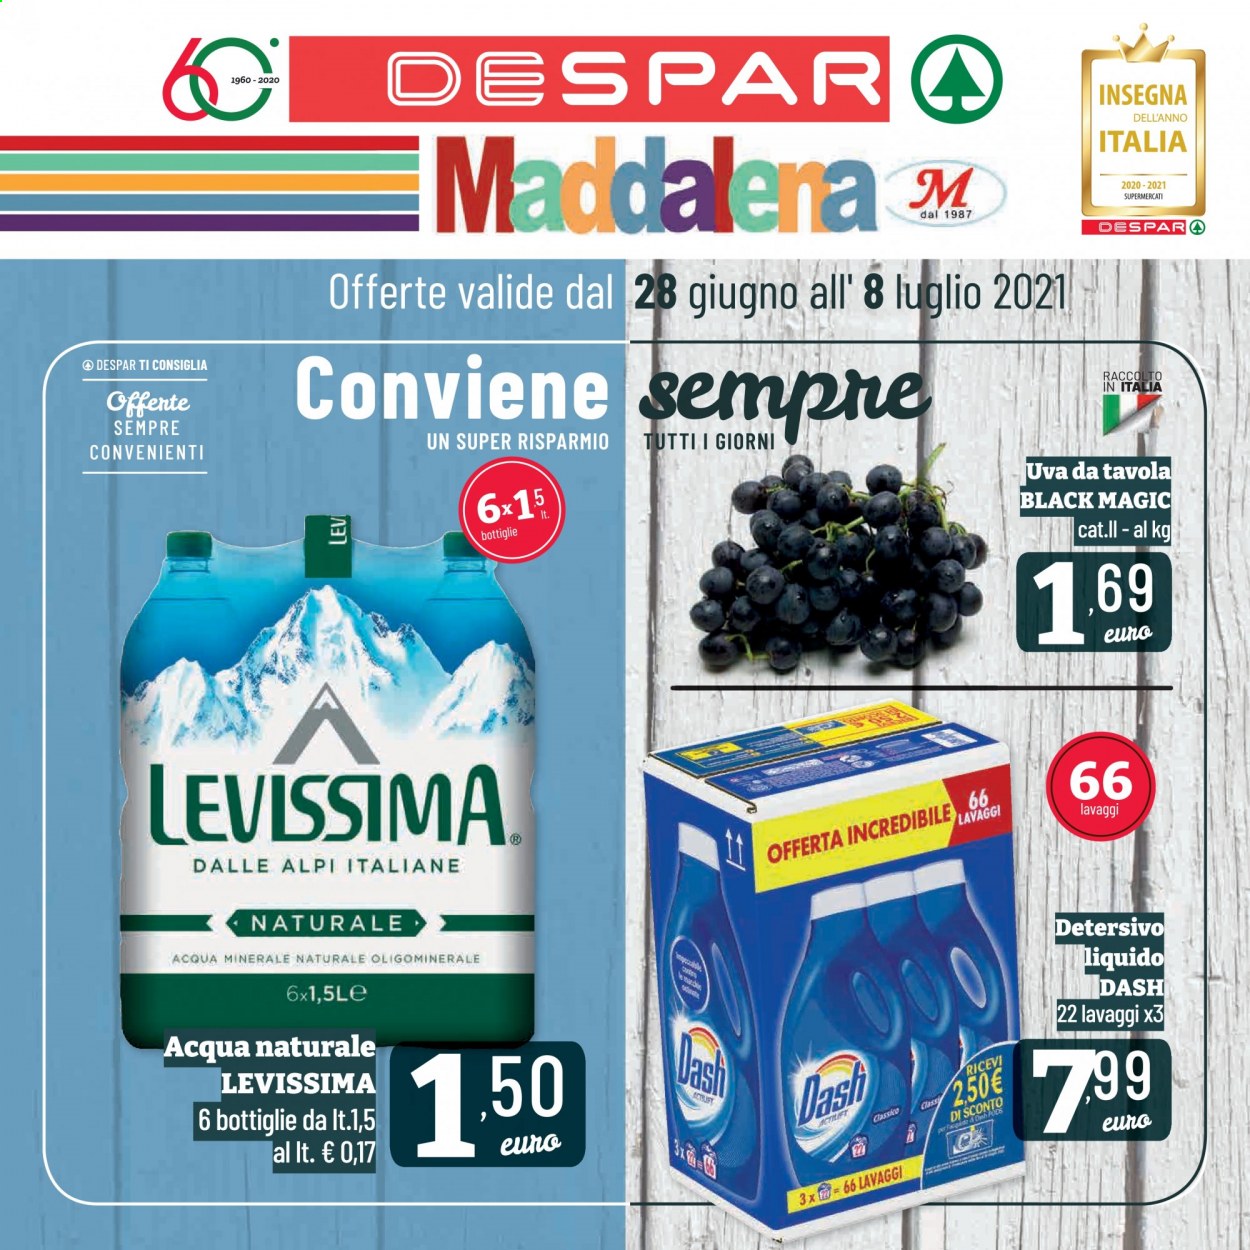 thumbnail - Volantino Despar - 28/6/2021 - 8/7/2021 - Prodotti in offerta - acqua minerale, acqua naturale, Levissima, detersivo, Dash. Pagina 1.